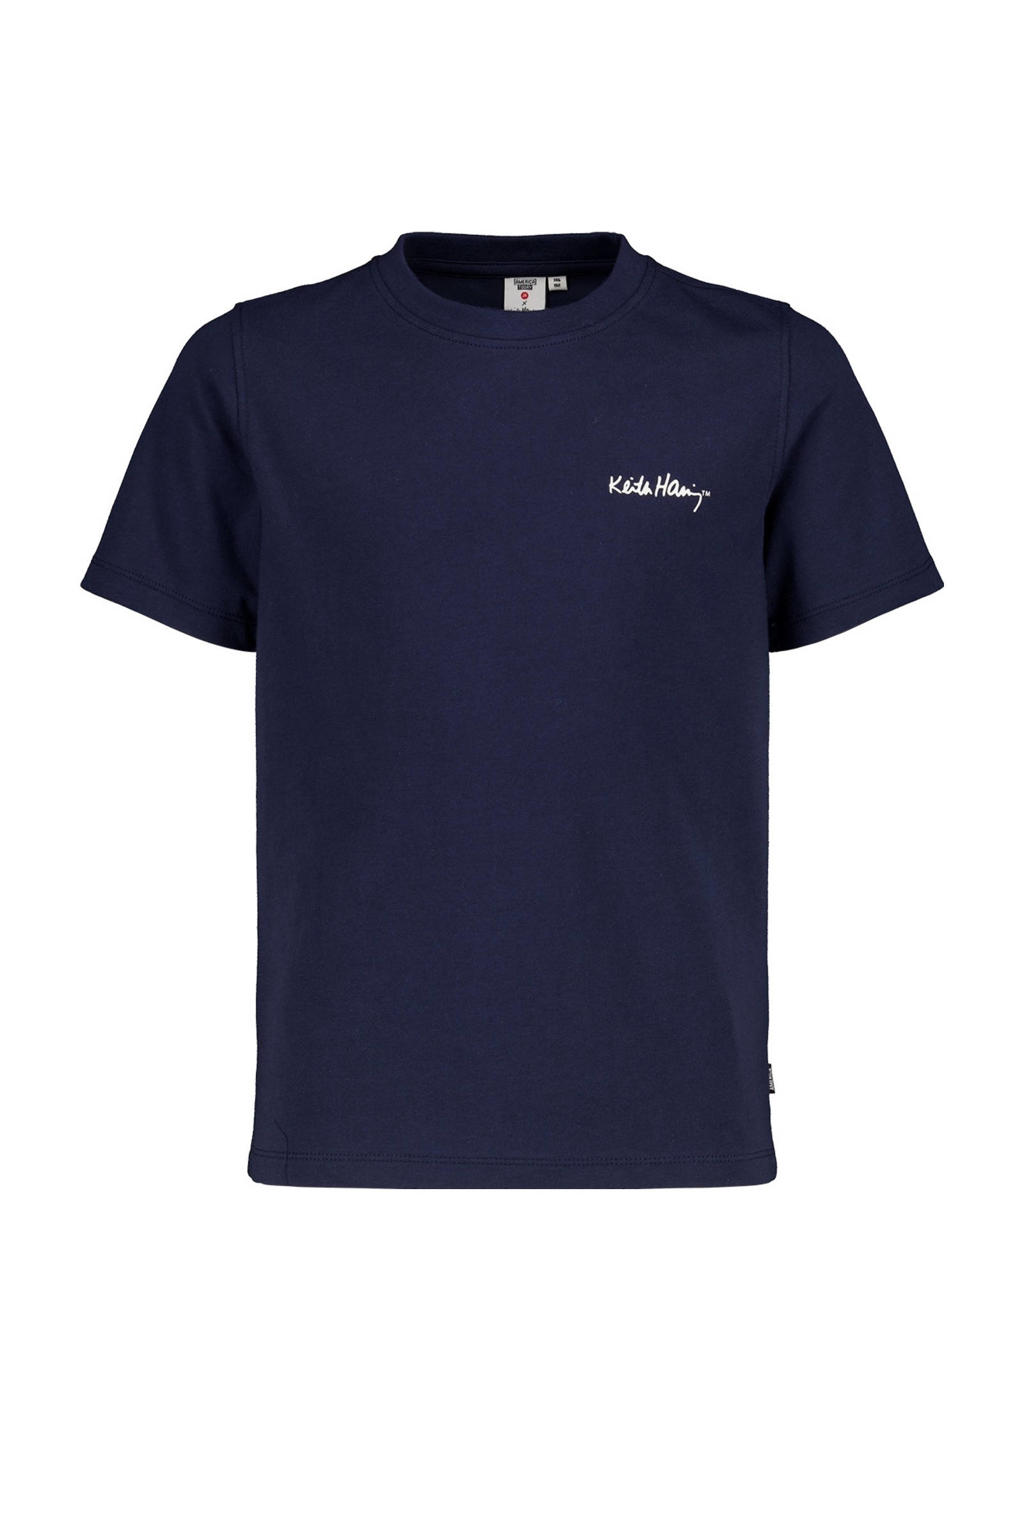 Blauwe jongens America Today T-shirt van katoen met printopdruk, korte mouwen en ronde hals